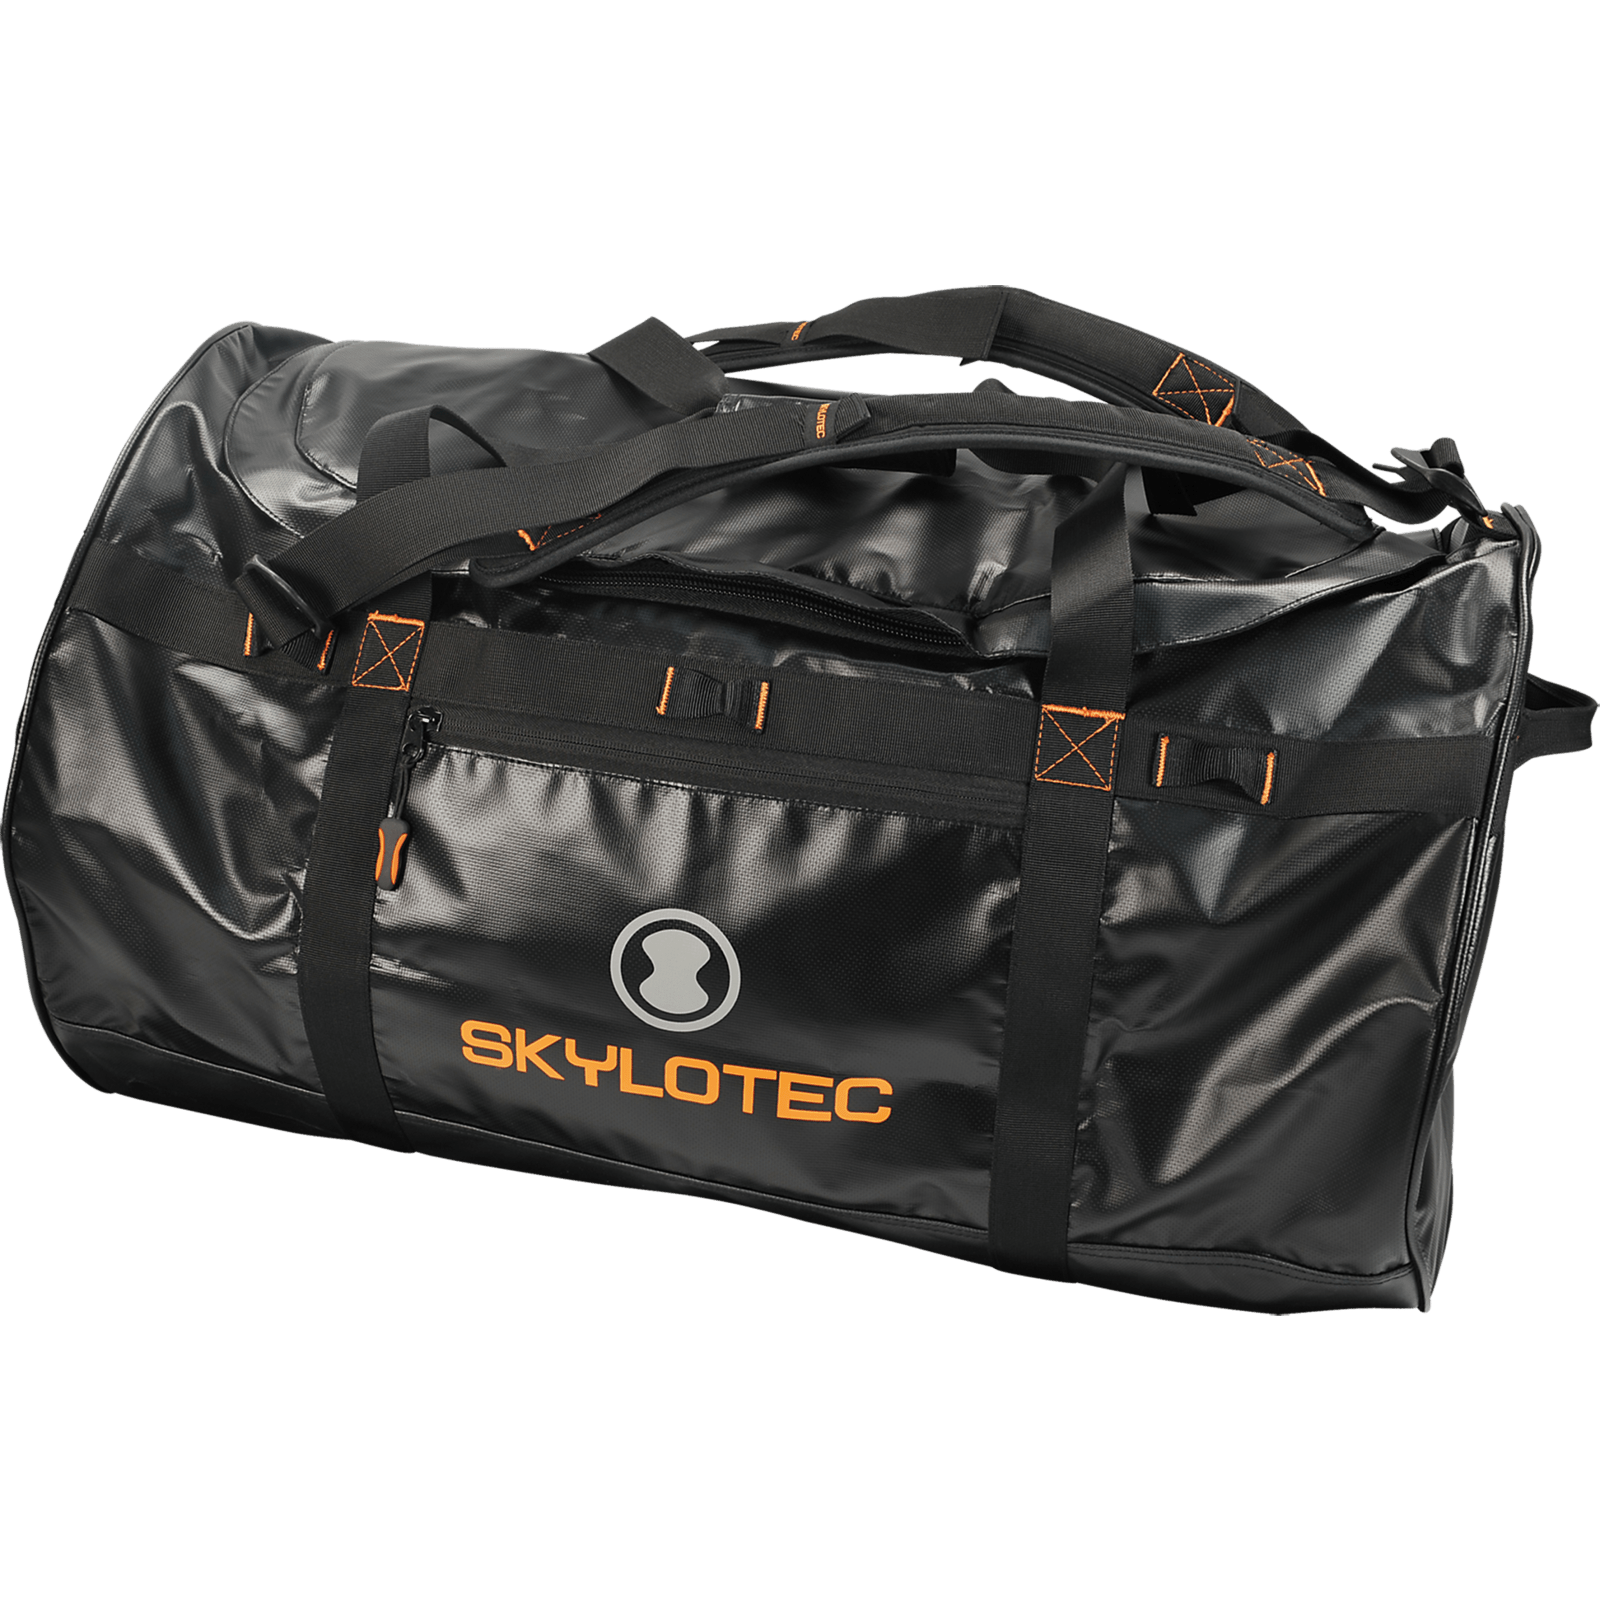 Skylotec Duffle Bag